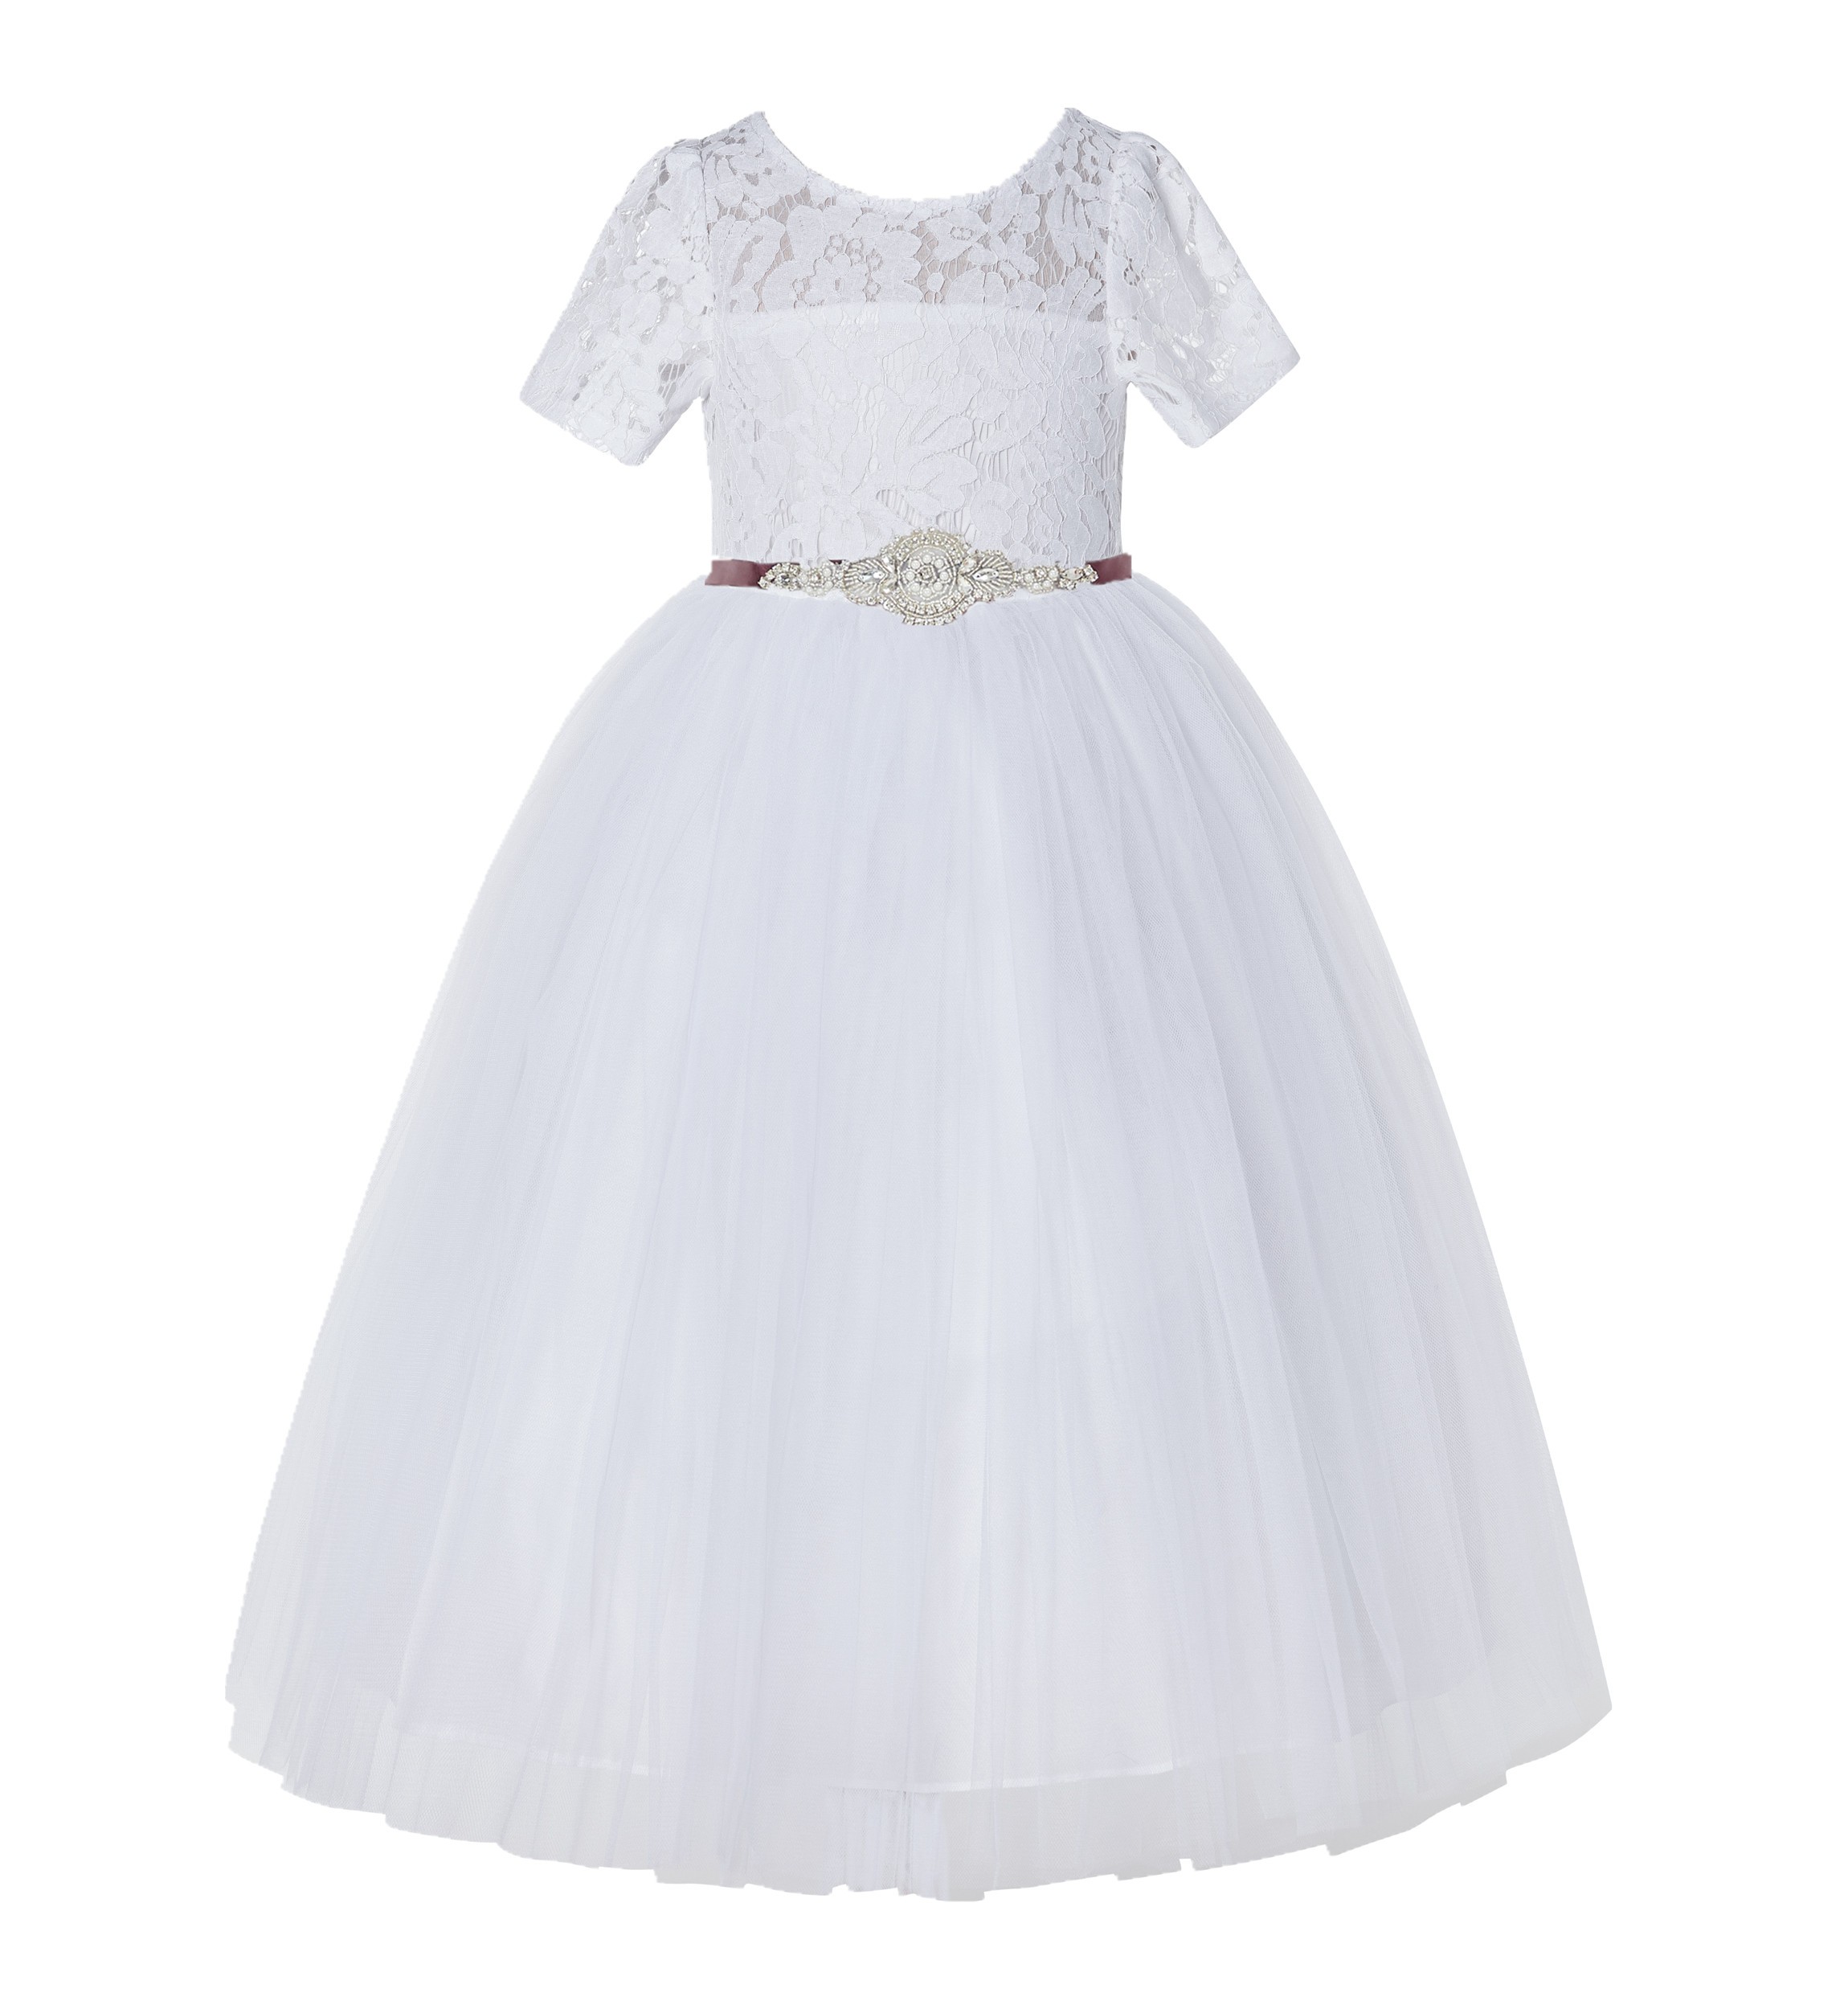 White / Burgundy Floral Lace Flower Girl Dress Vintage Dress LG2